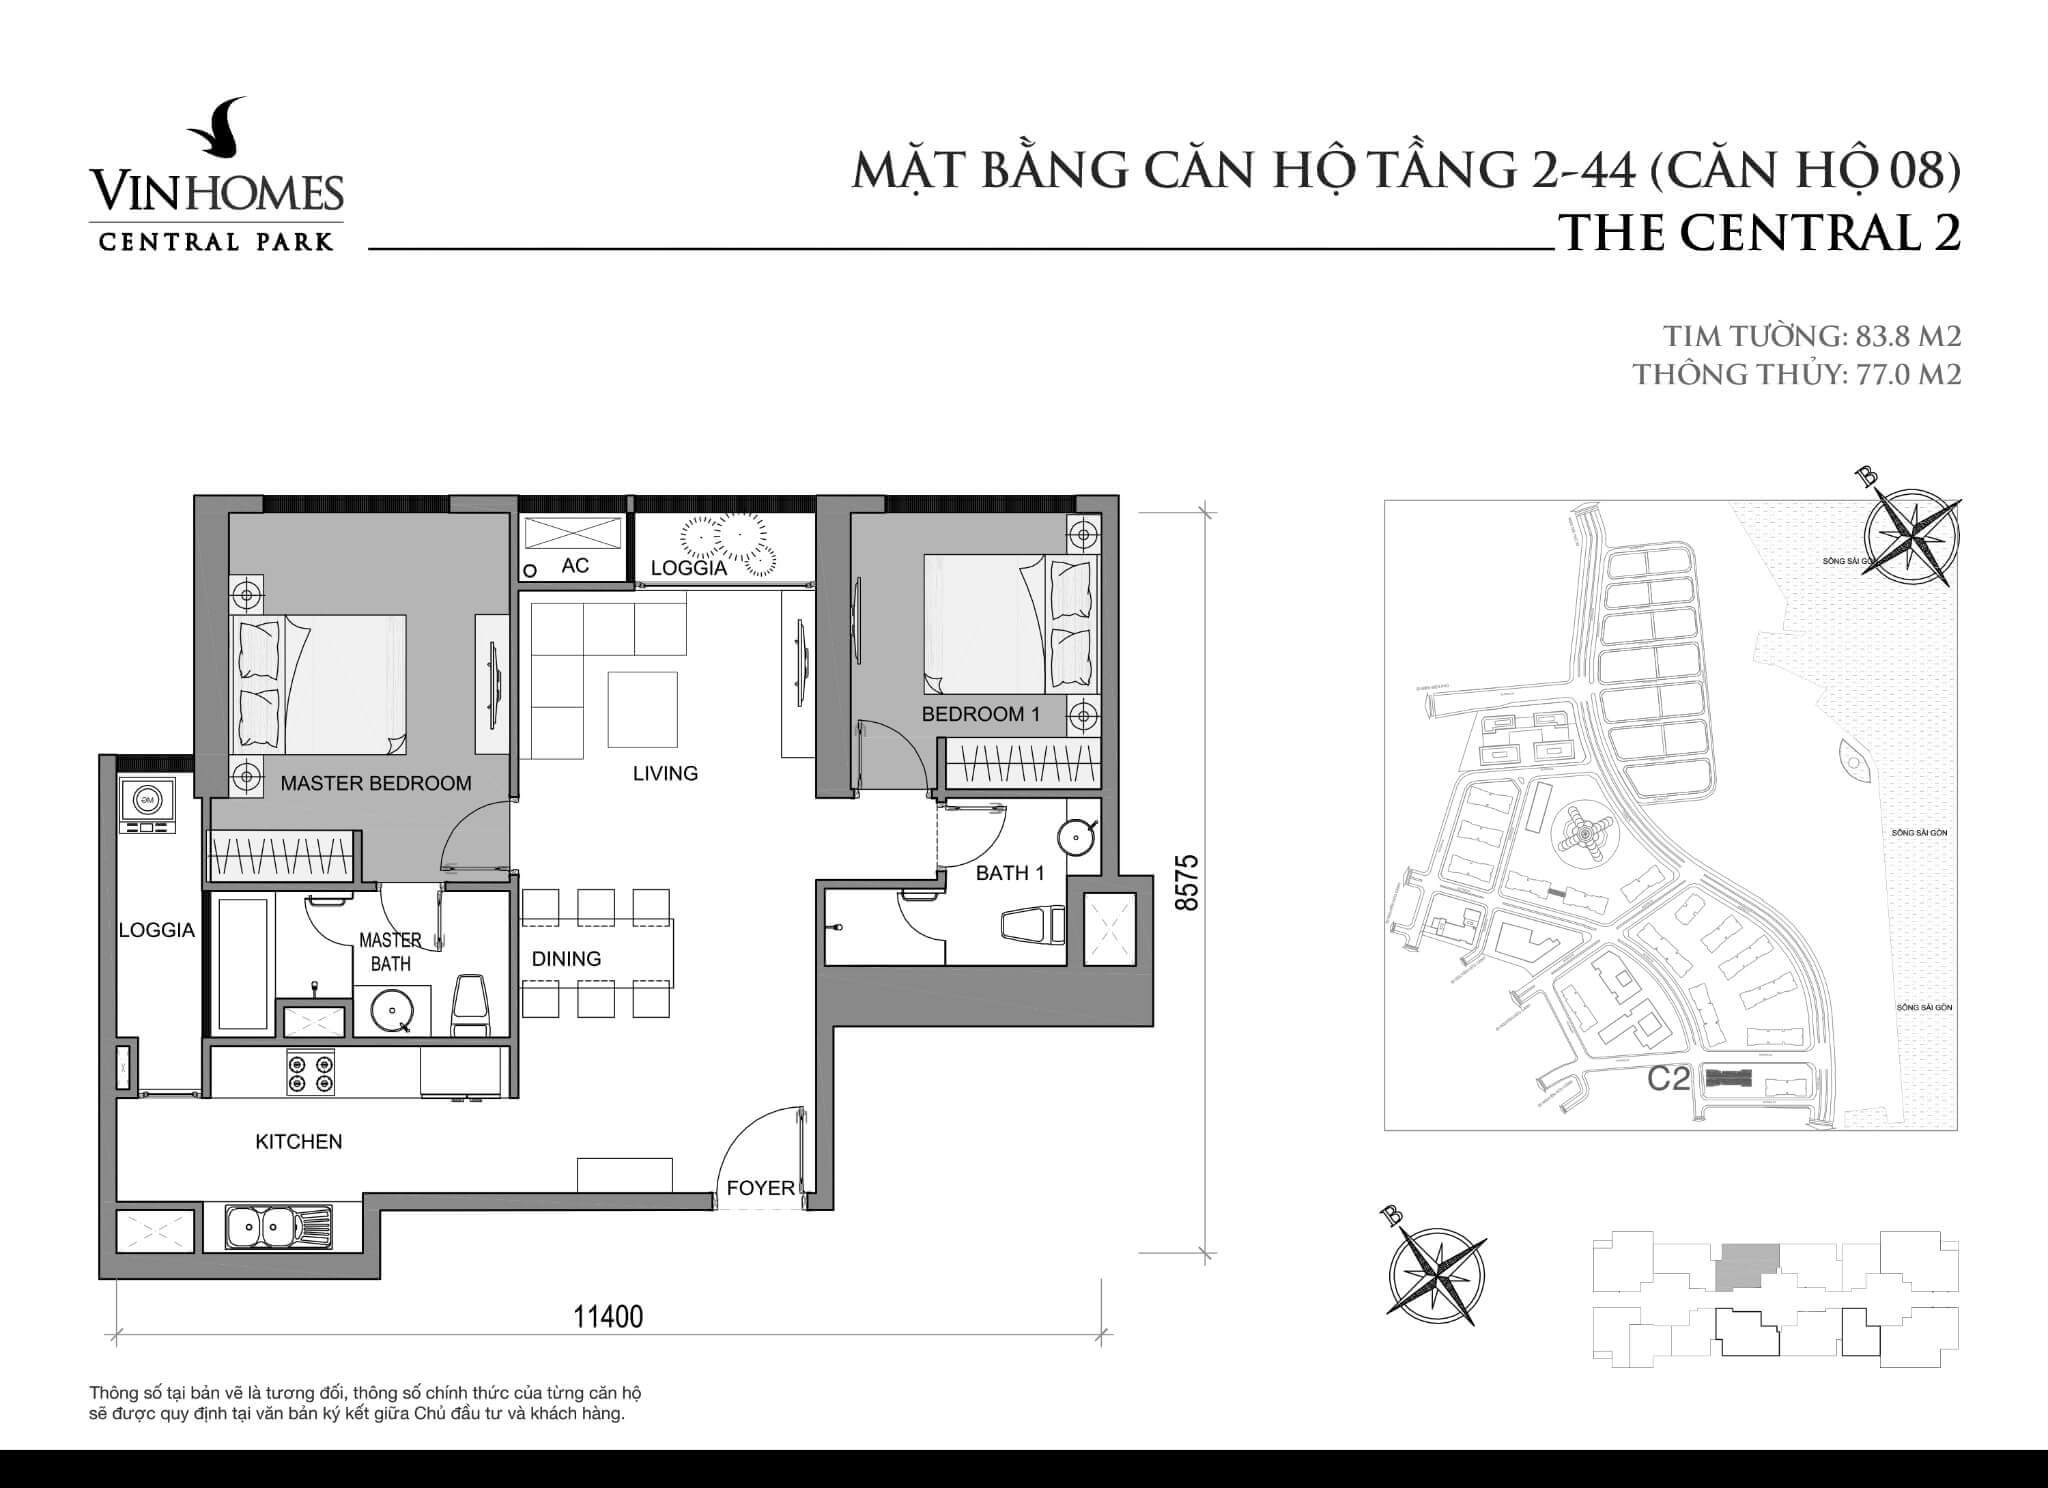 layout căn hộ số 8 tầng 2-44 Central 2